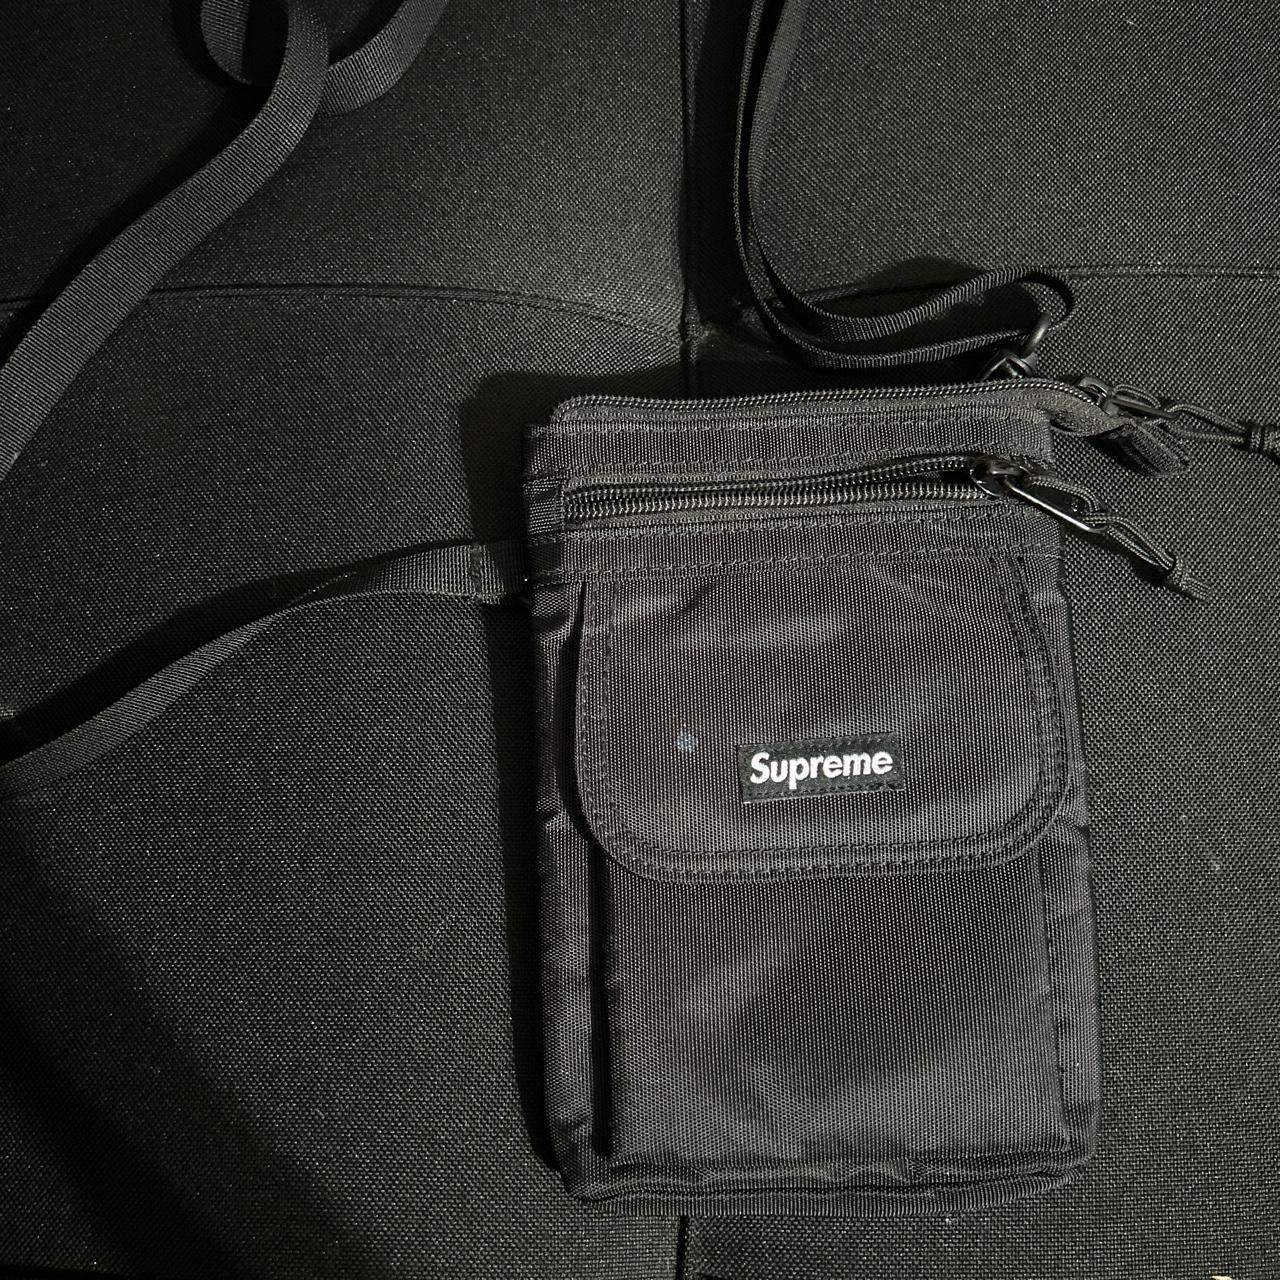 Supreme Backpack - Depop